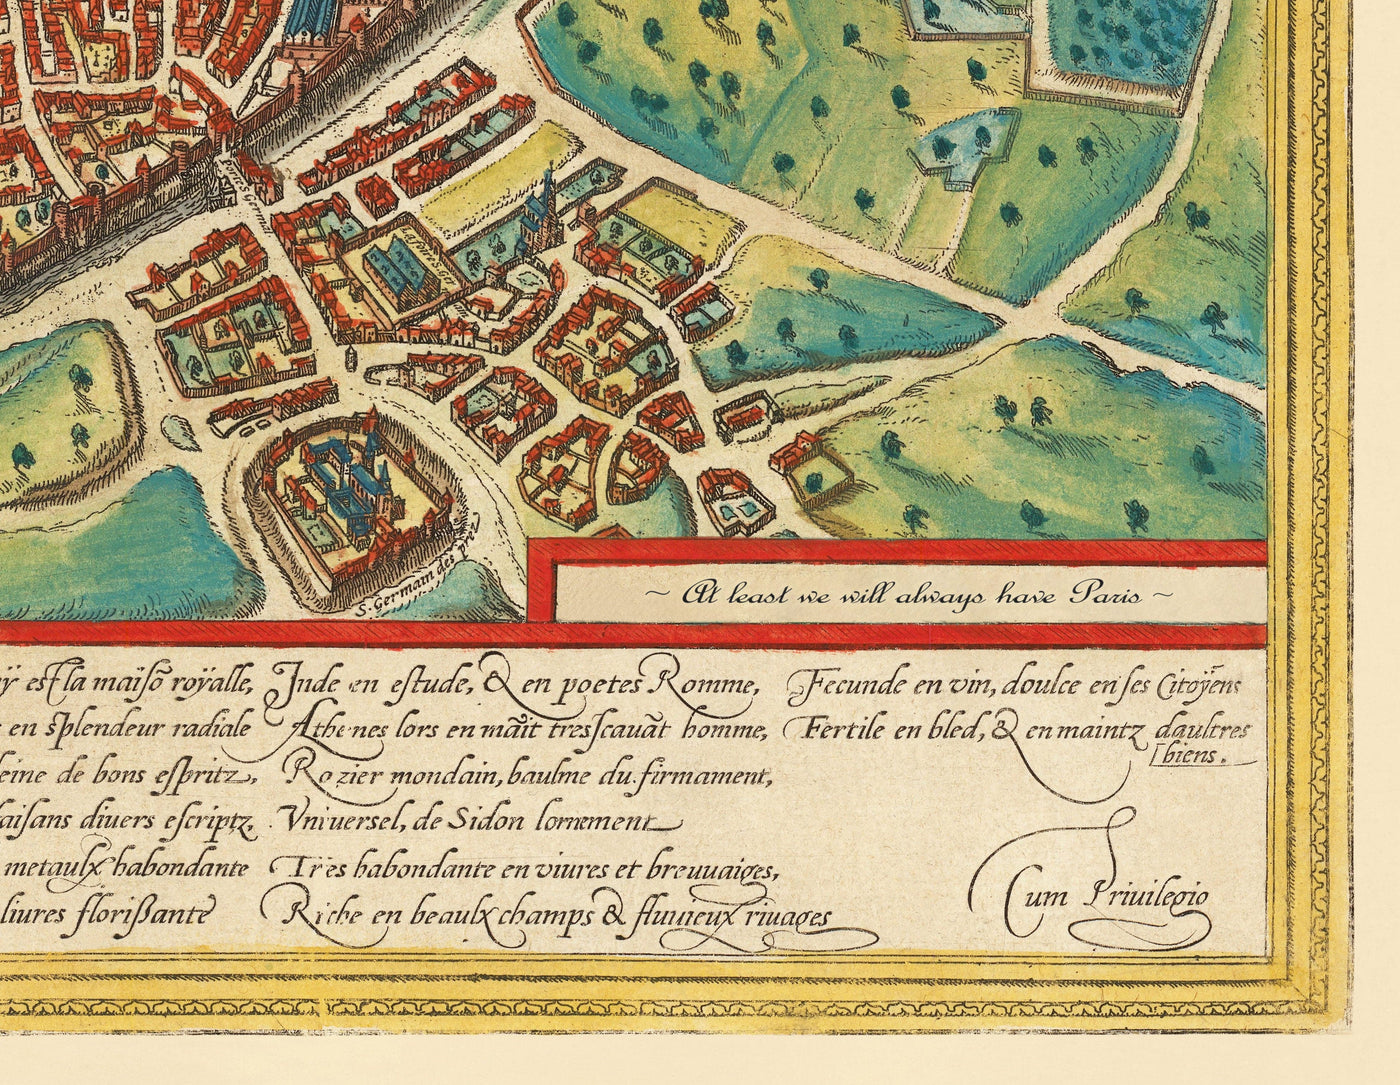 Alte Karte von Jerusalem, 1582 von Georg Braun - Jüdisch & Islam Alte Stadt, Tempelhalterung, Stadtmauern, Turm von David, Jaffa Gate